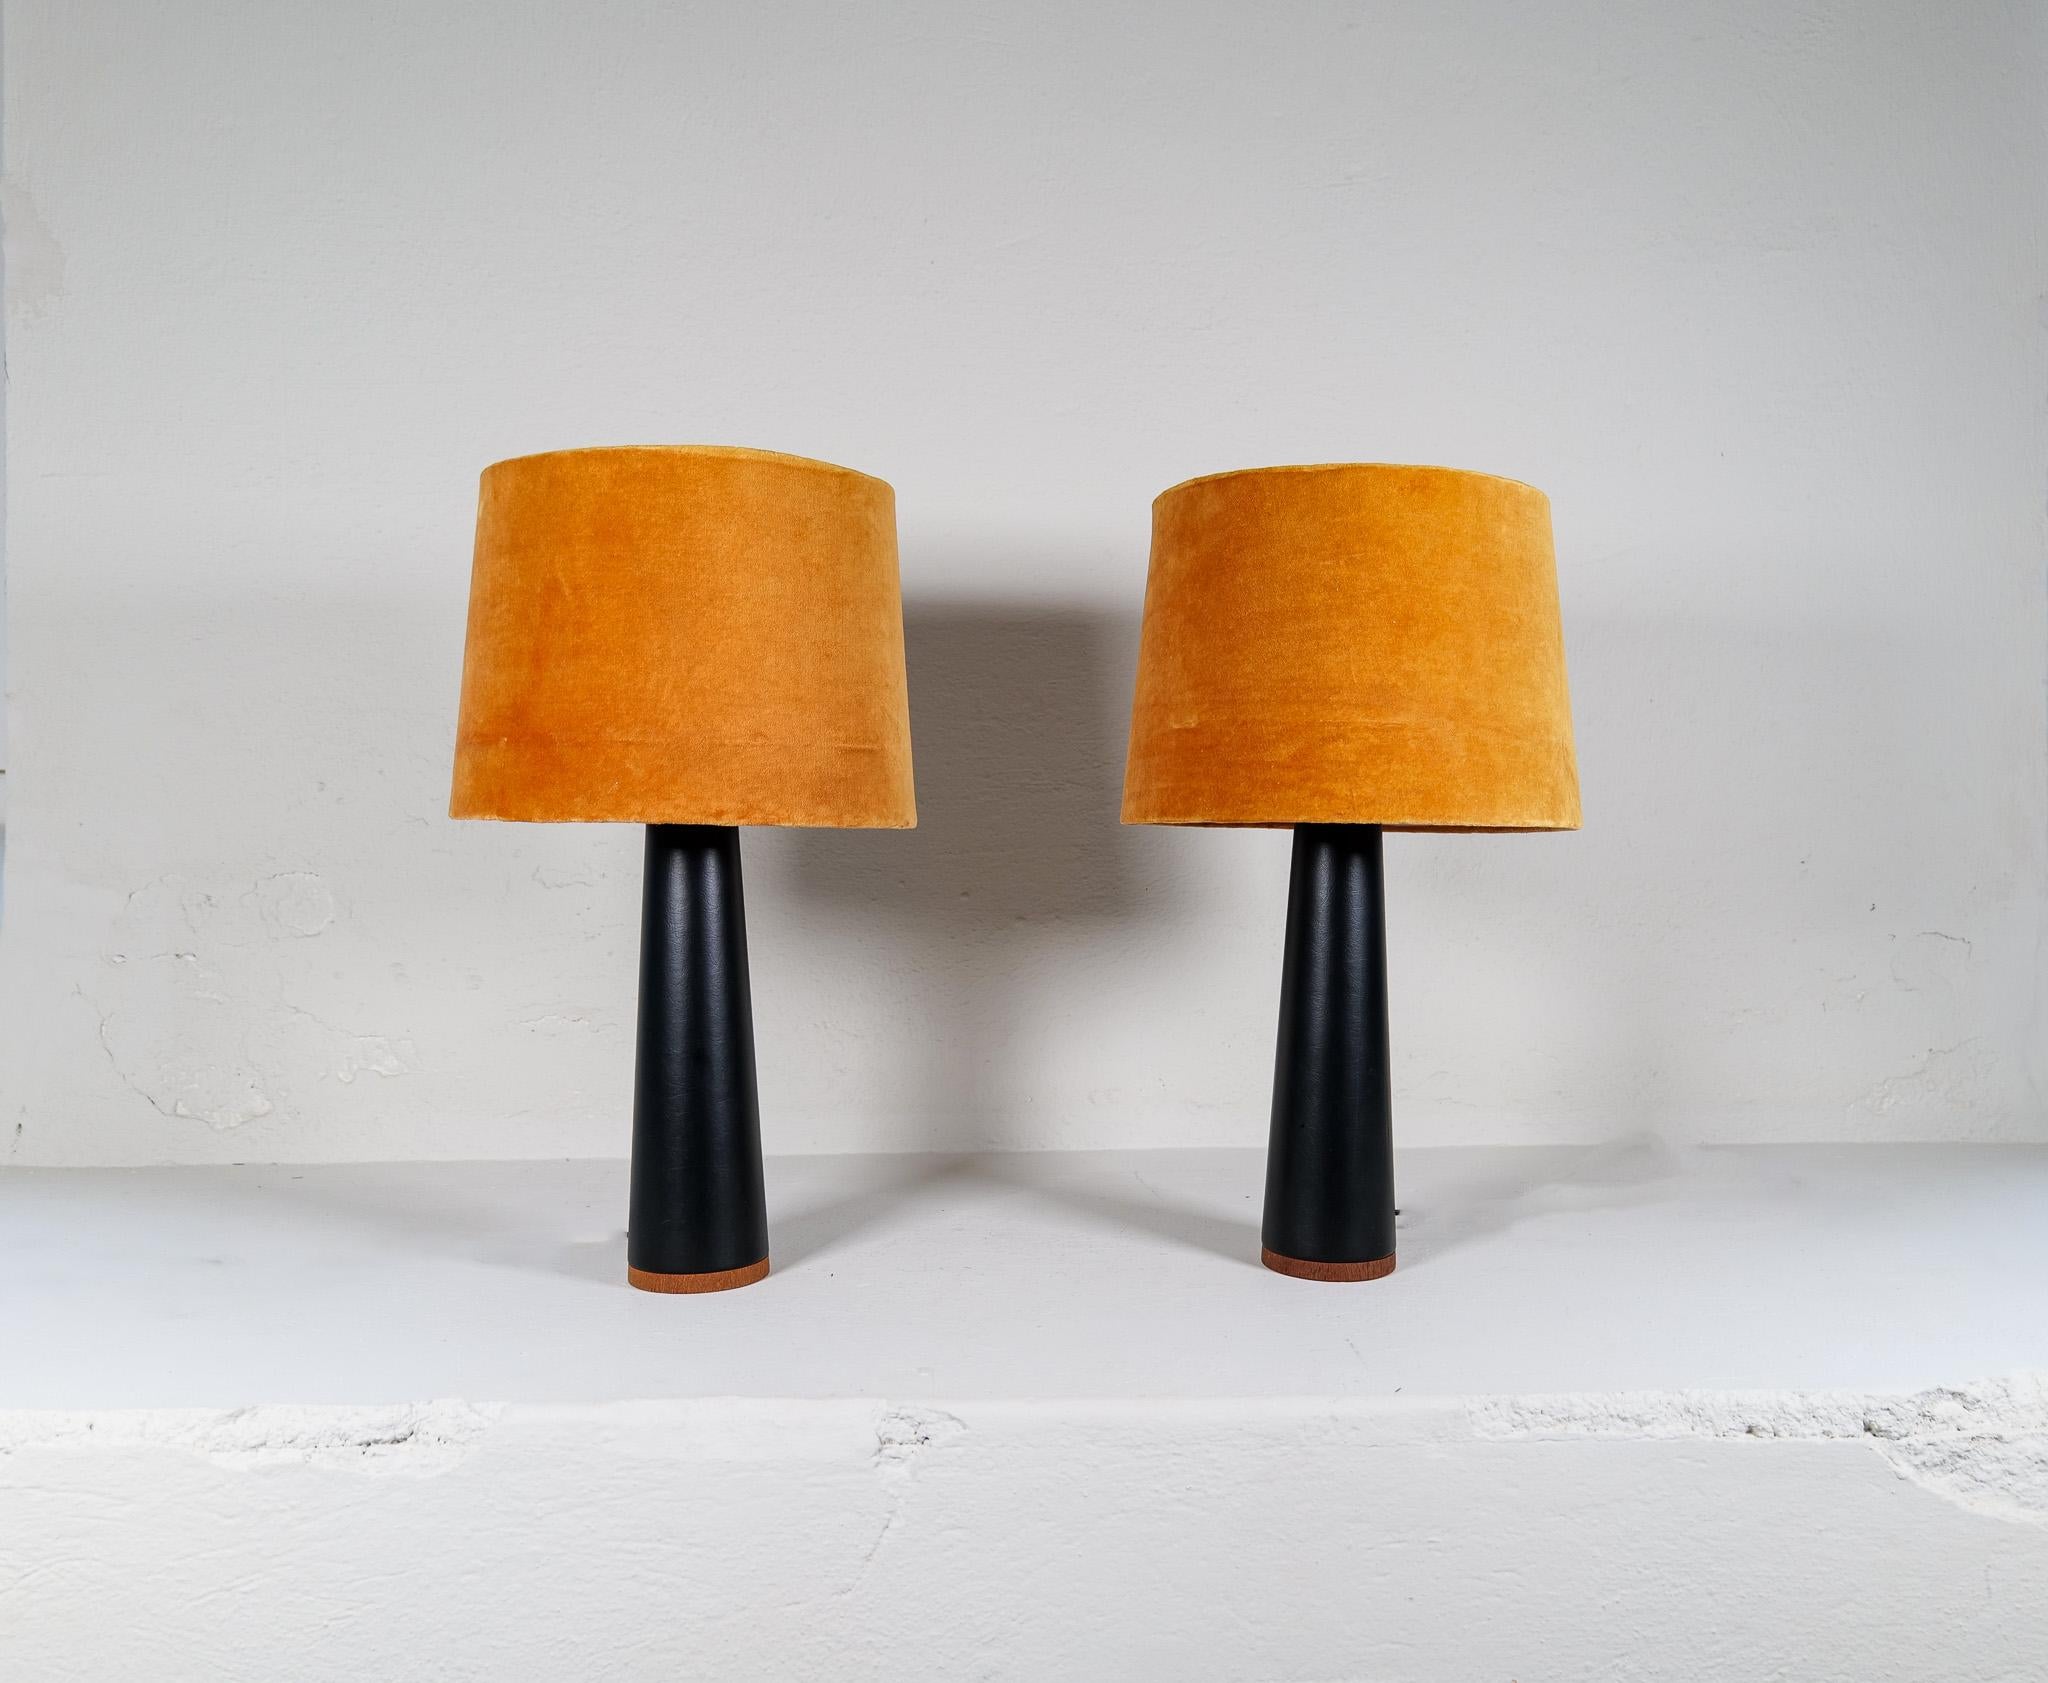 Paire de lampes de table fabriquées en Suède et produites par le célèbre Luxus. Ils sont fabriqués en cuir synthétique noir avec des coutures autour d'une base en teck. 

Belle condition vintage.

Dimensions : Hauteur 37cm, Base 11 diamètre, avec